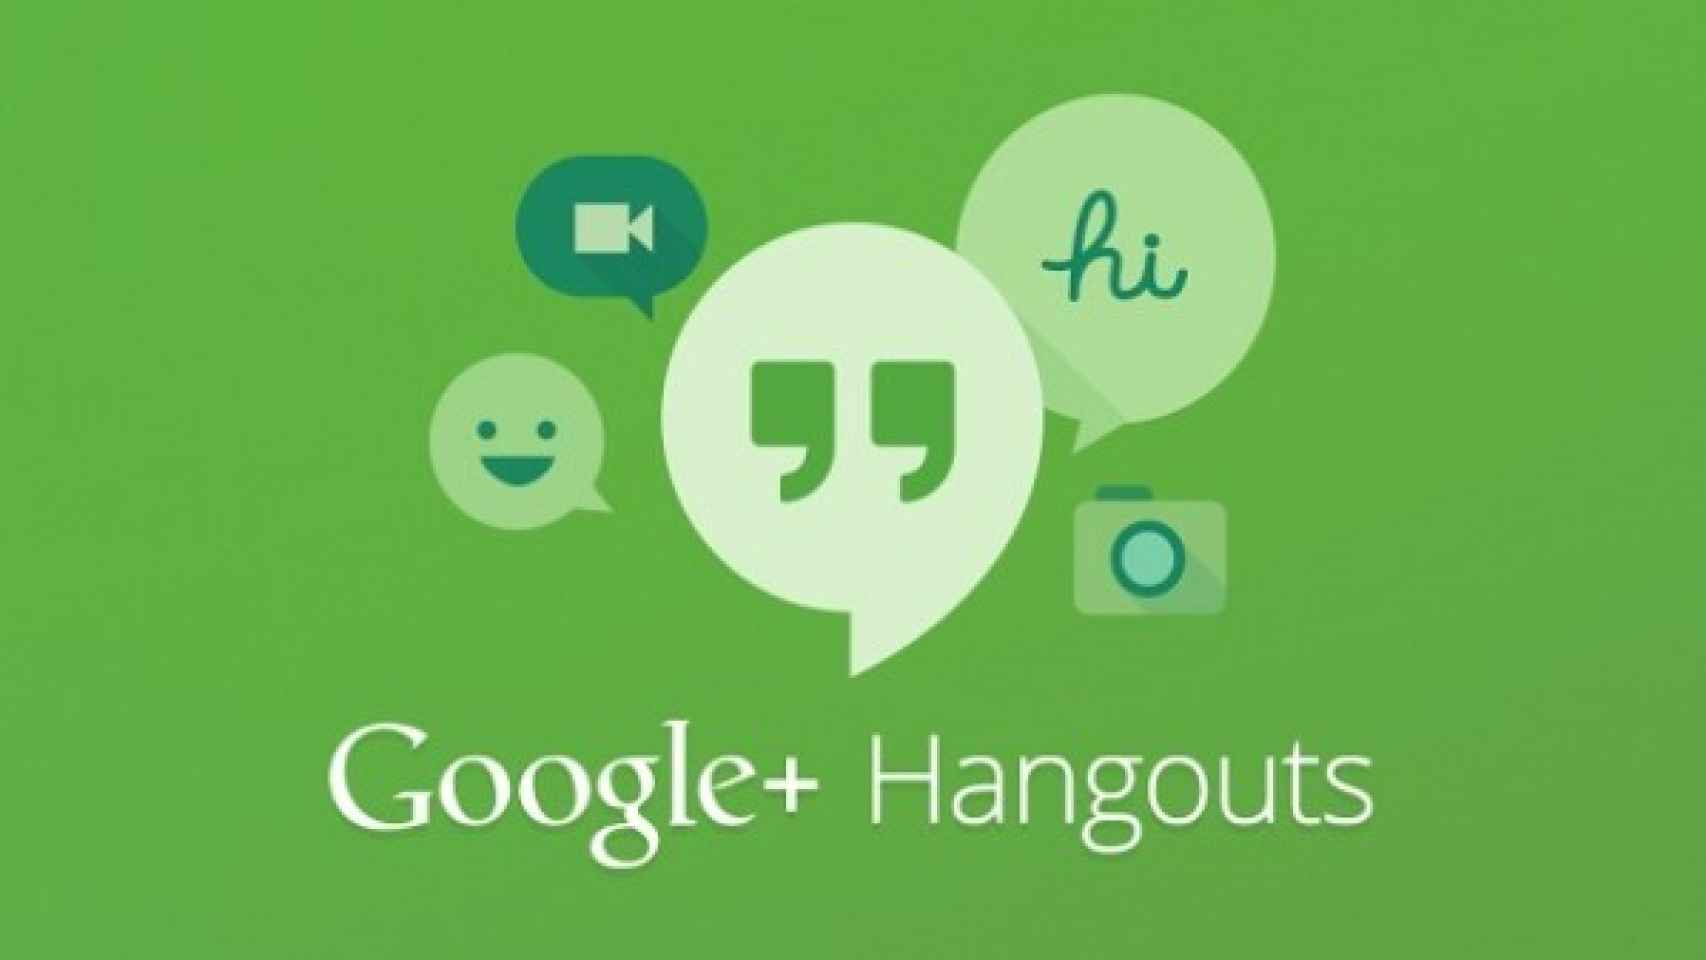 Google Hangouts se actualiza añadiendo integración con sms, geolocalización y gifs animados